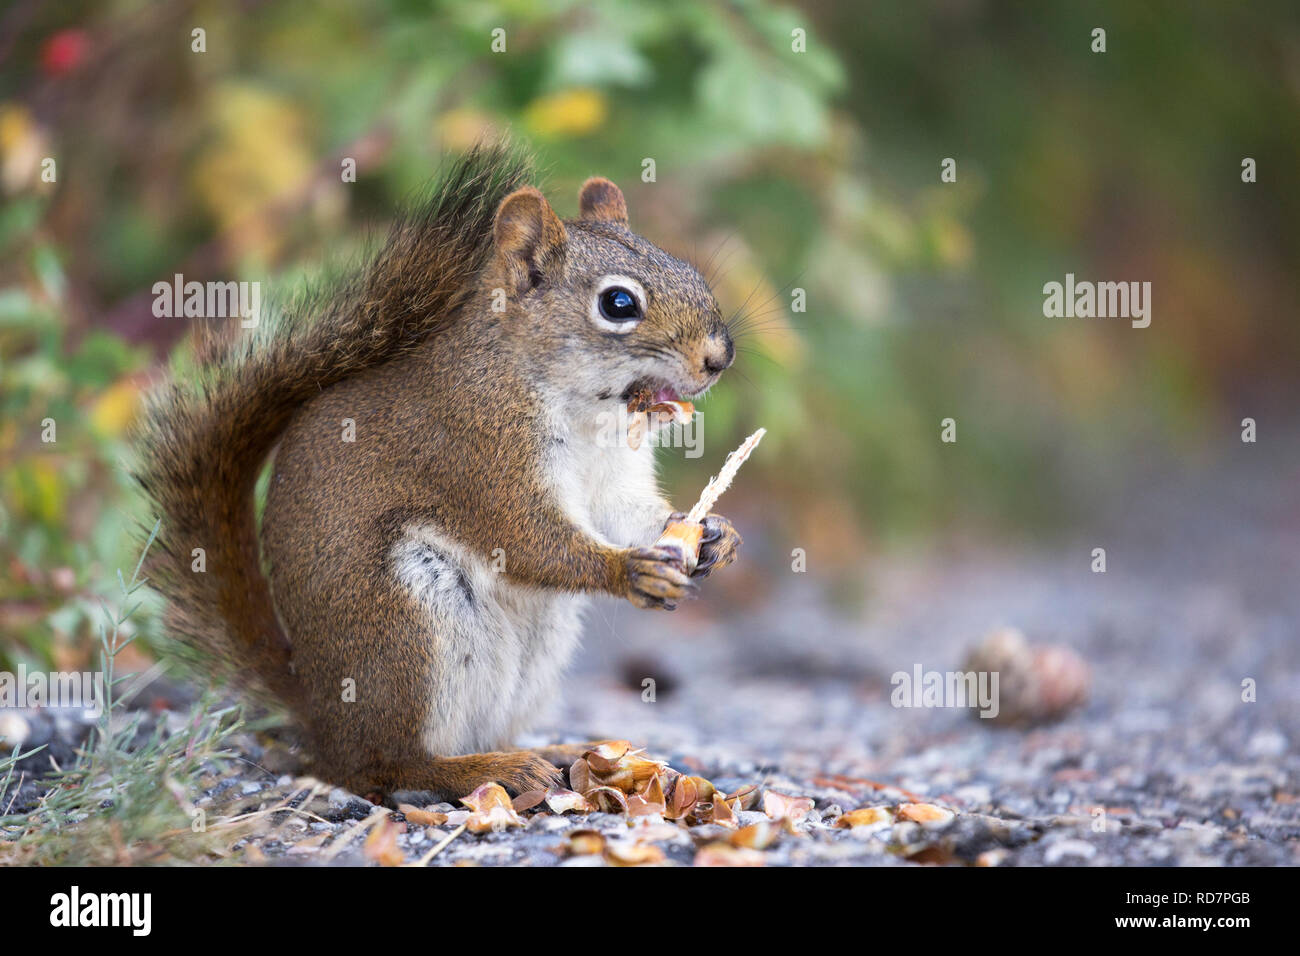 L'écureuil roux (Tamiasciurus hudsonicus) se nourrissant du cône d'épinette dans la forêt montagnarde, parc national Banff Banque D'Images